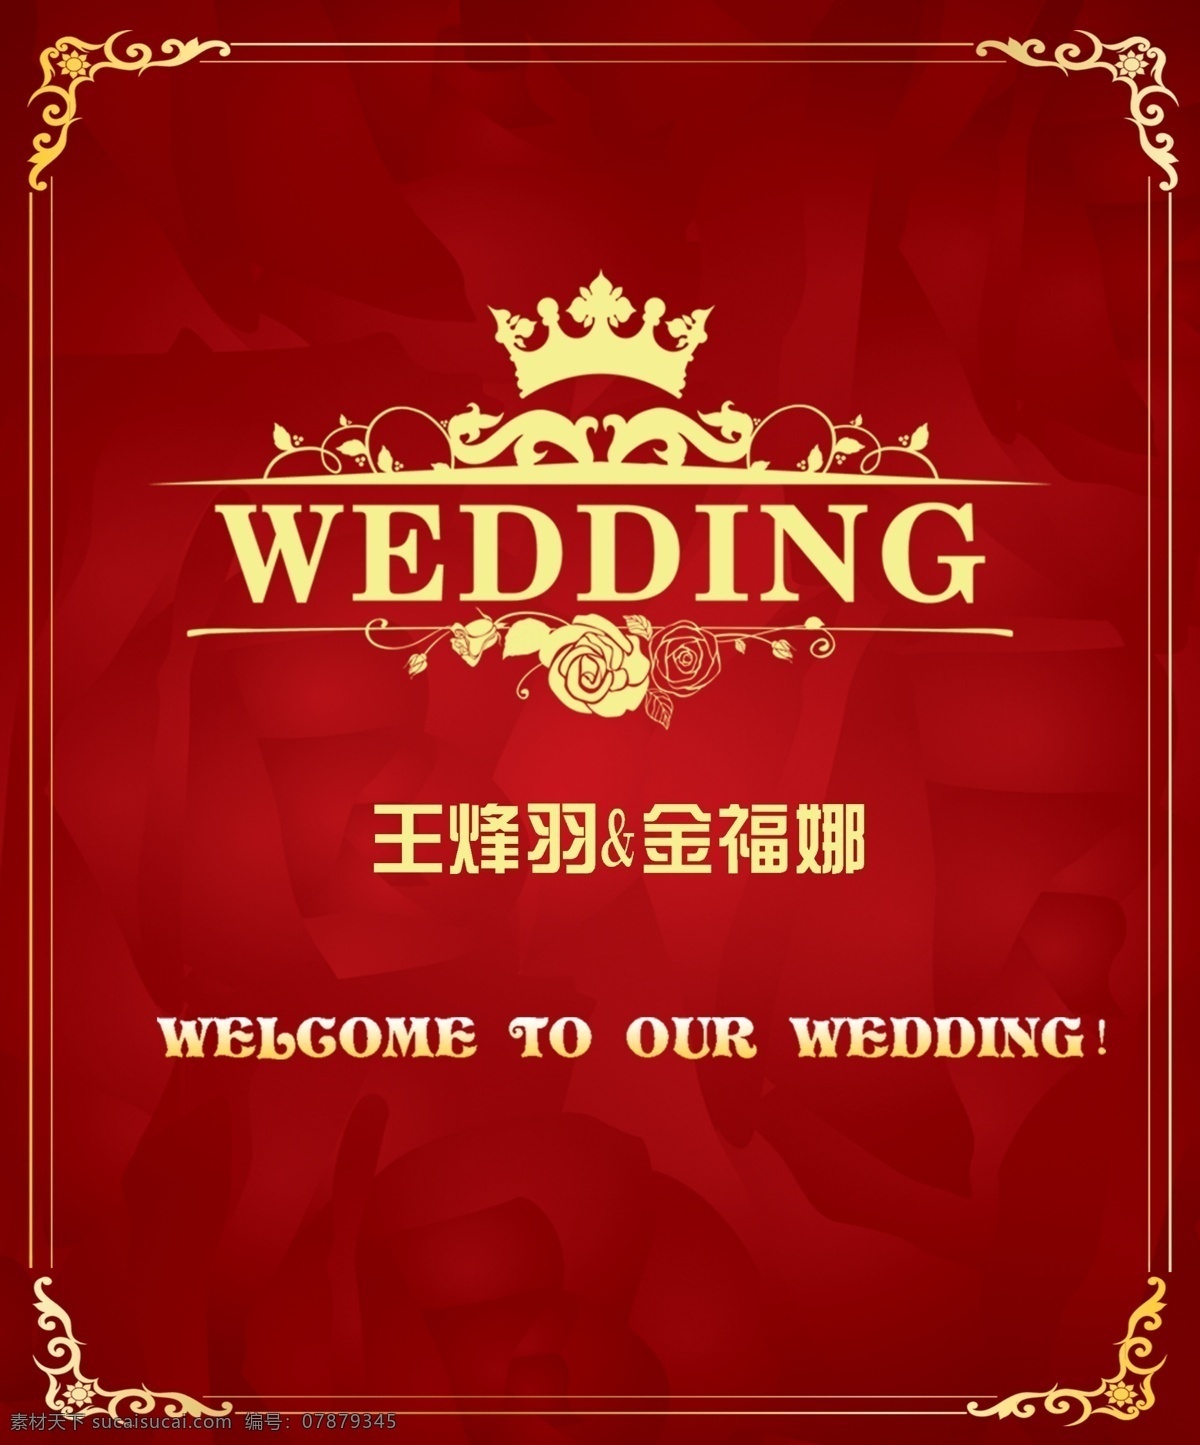 婚礼主题 婚礼 主题 logo 背景 红色欧式 分层